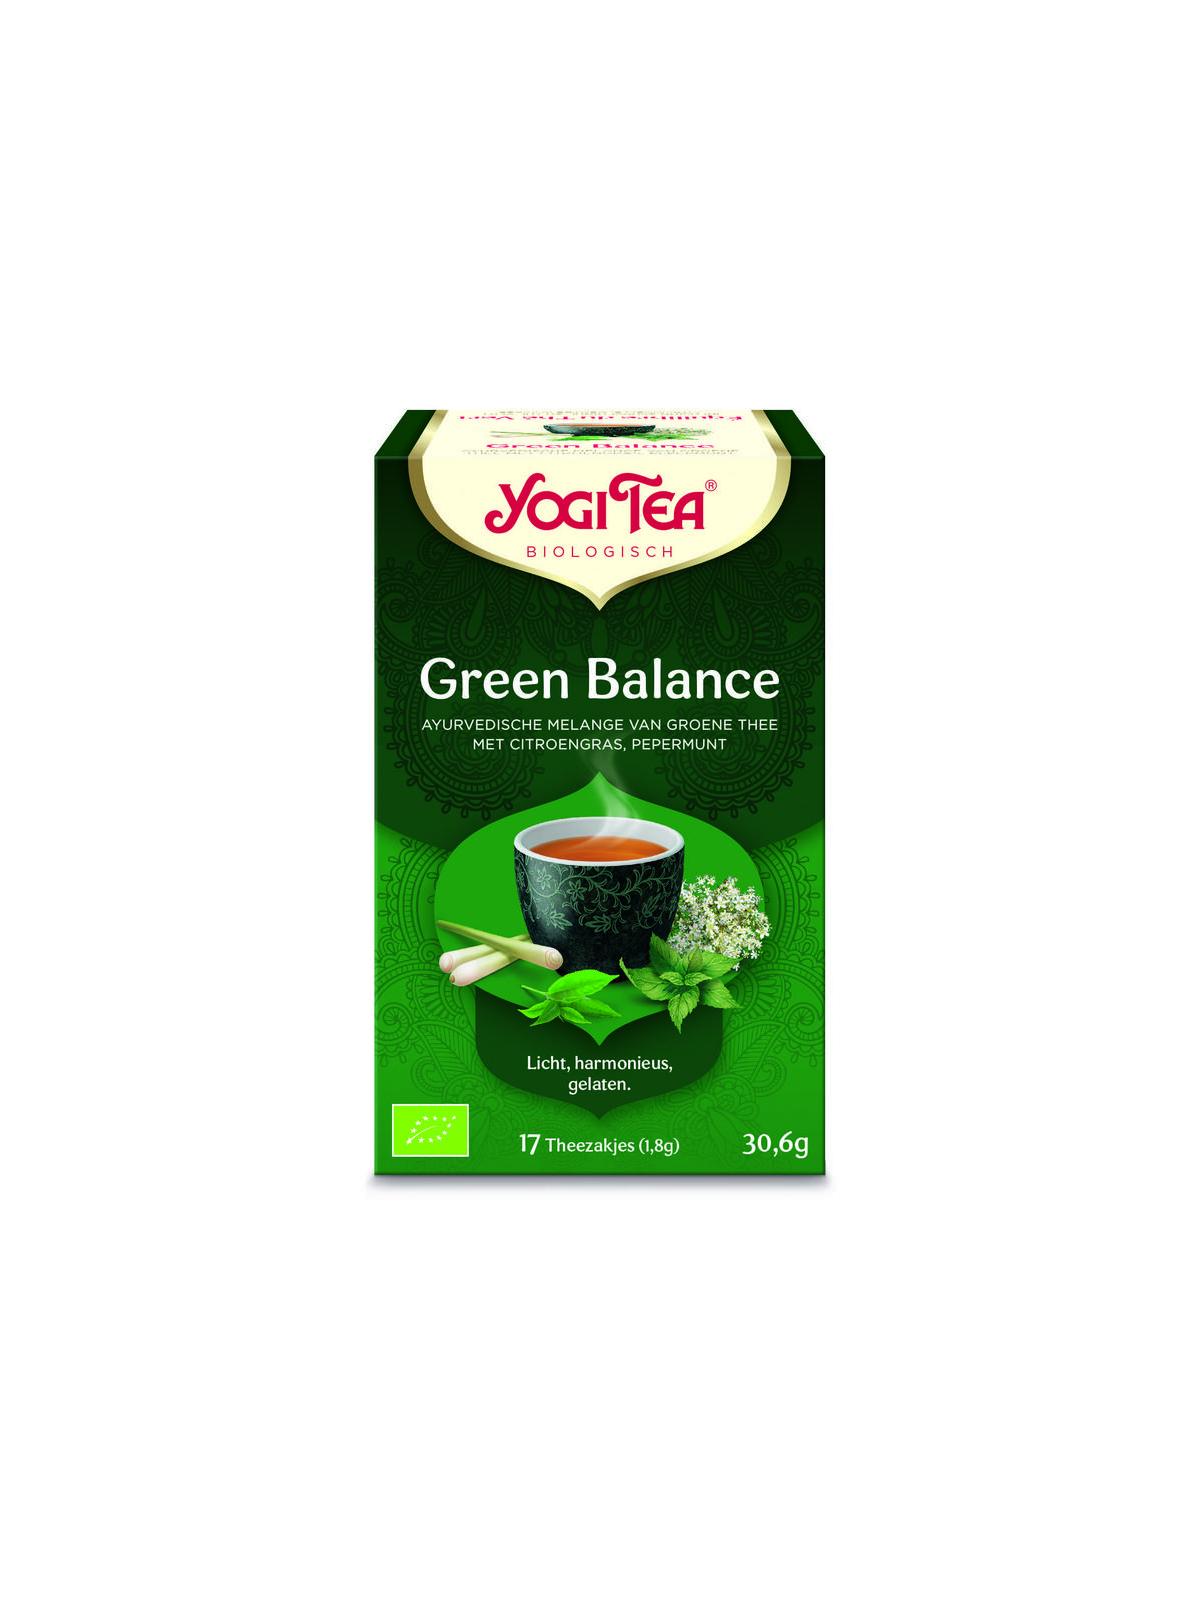 Green balance bio